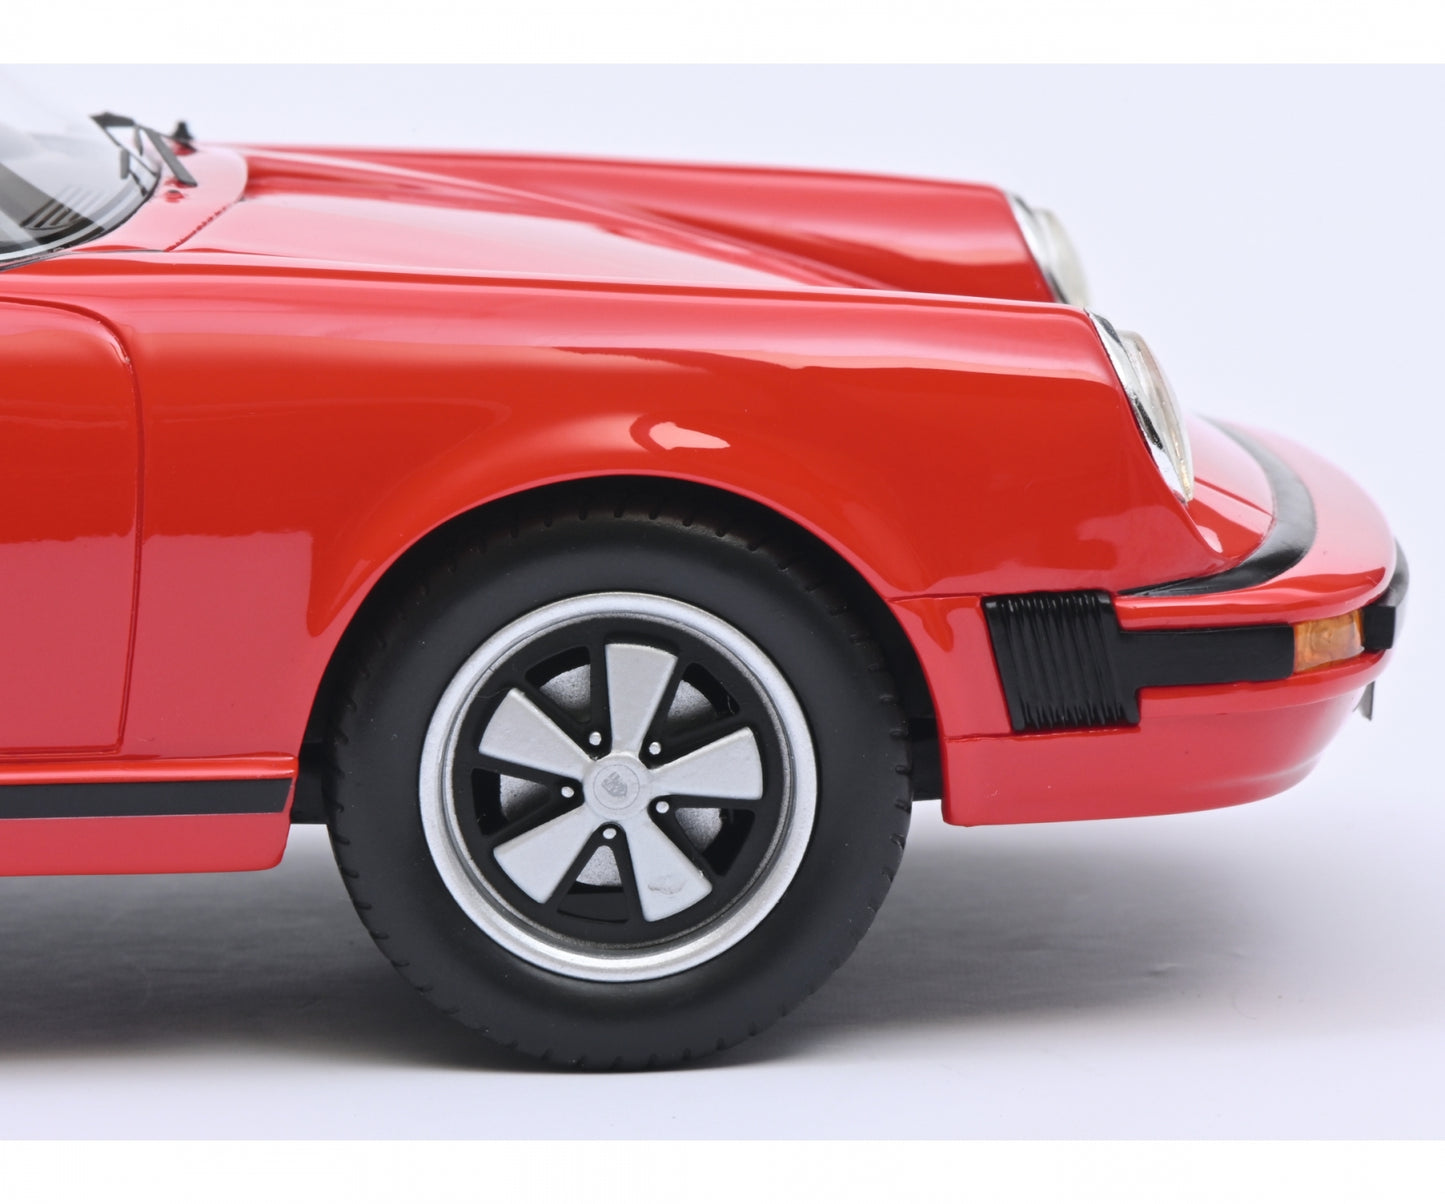 Schuco 1:18 Porsche 911 Coupe 1974 Red 450025600